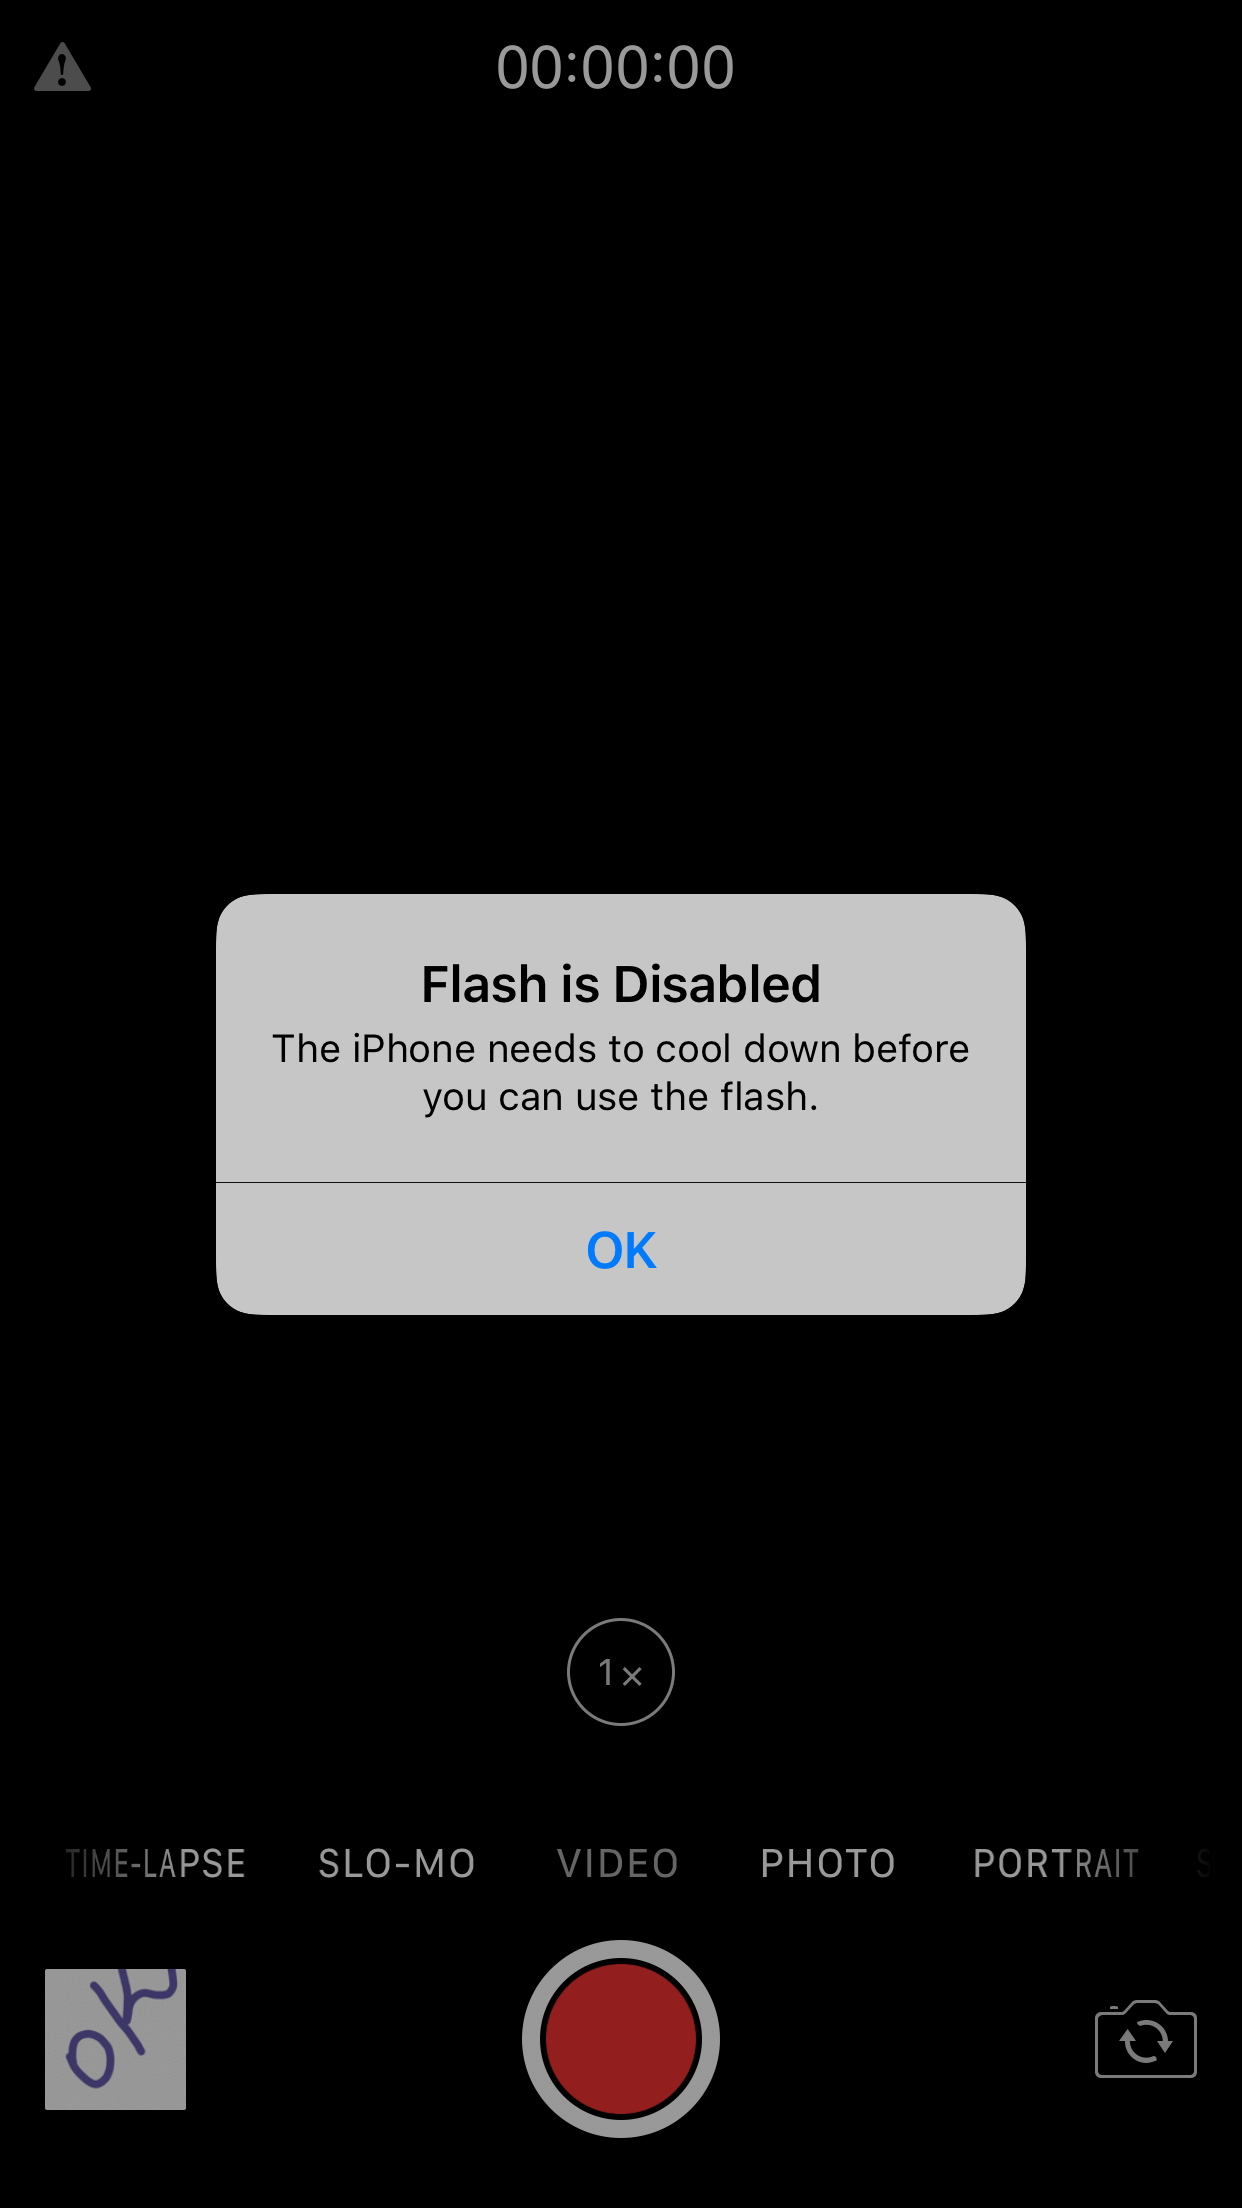 Bijwonen huilen Pathologisch My iPhone 7 Plus yesterday work front c… - Apple Community